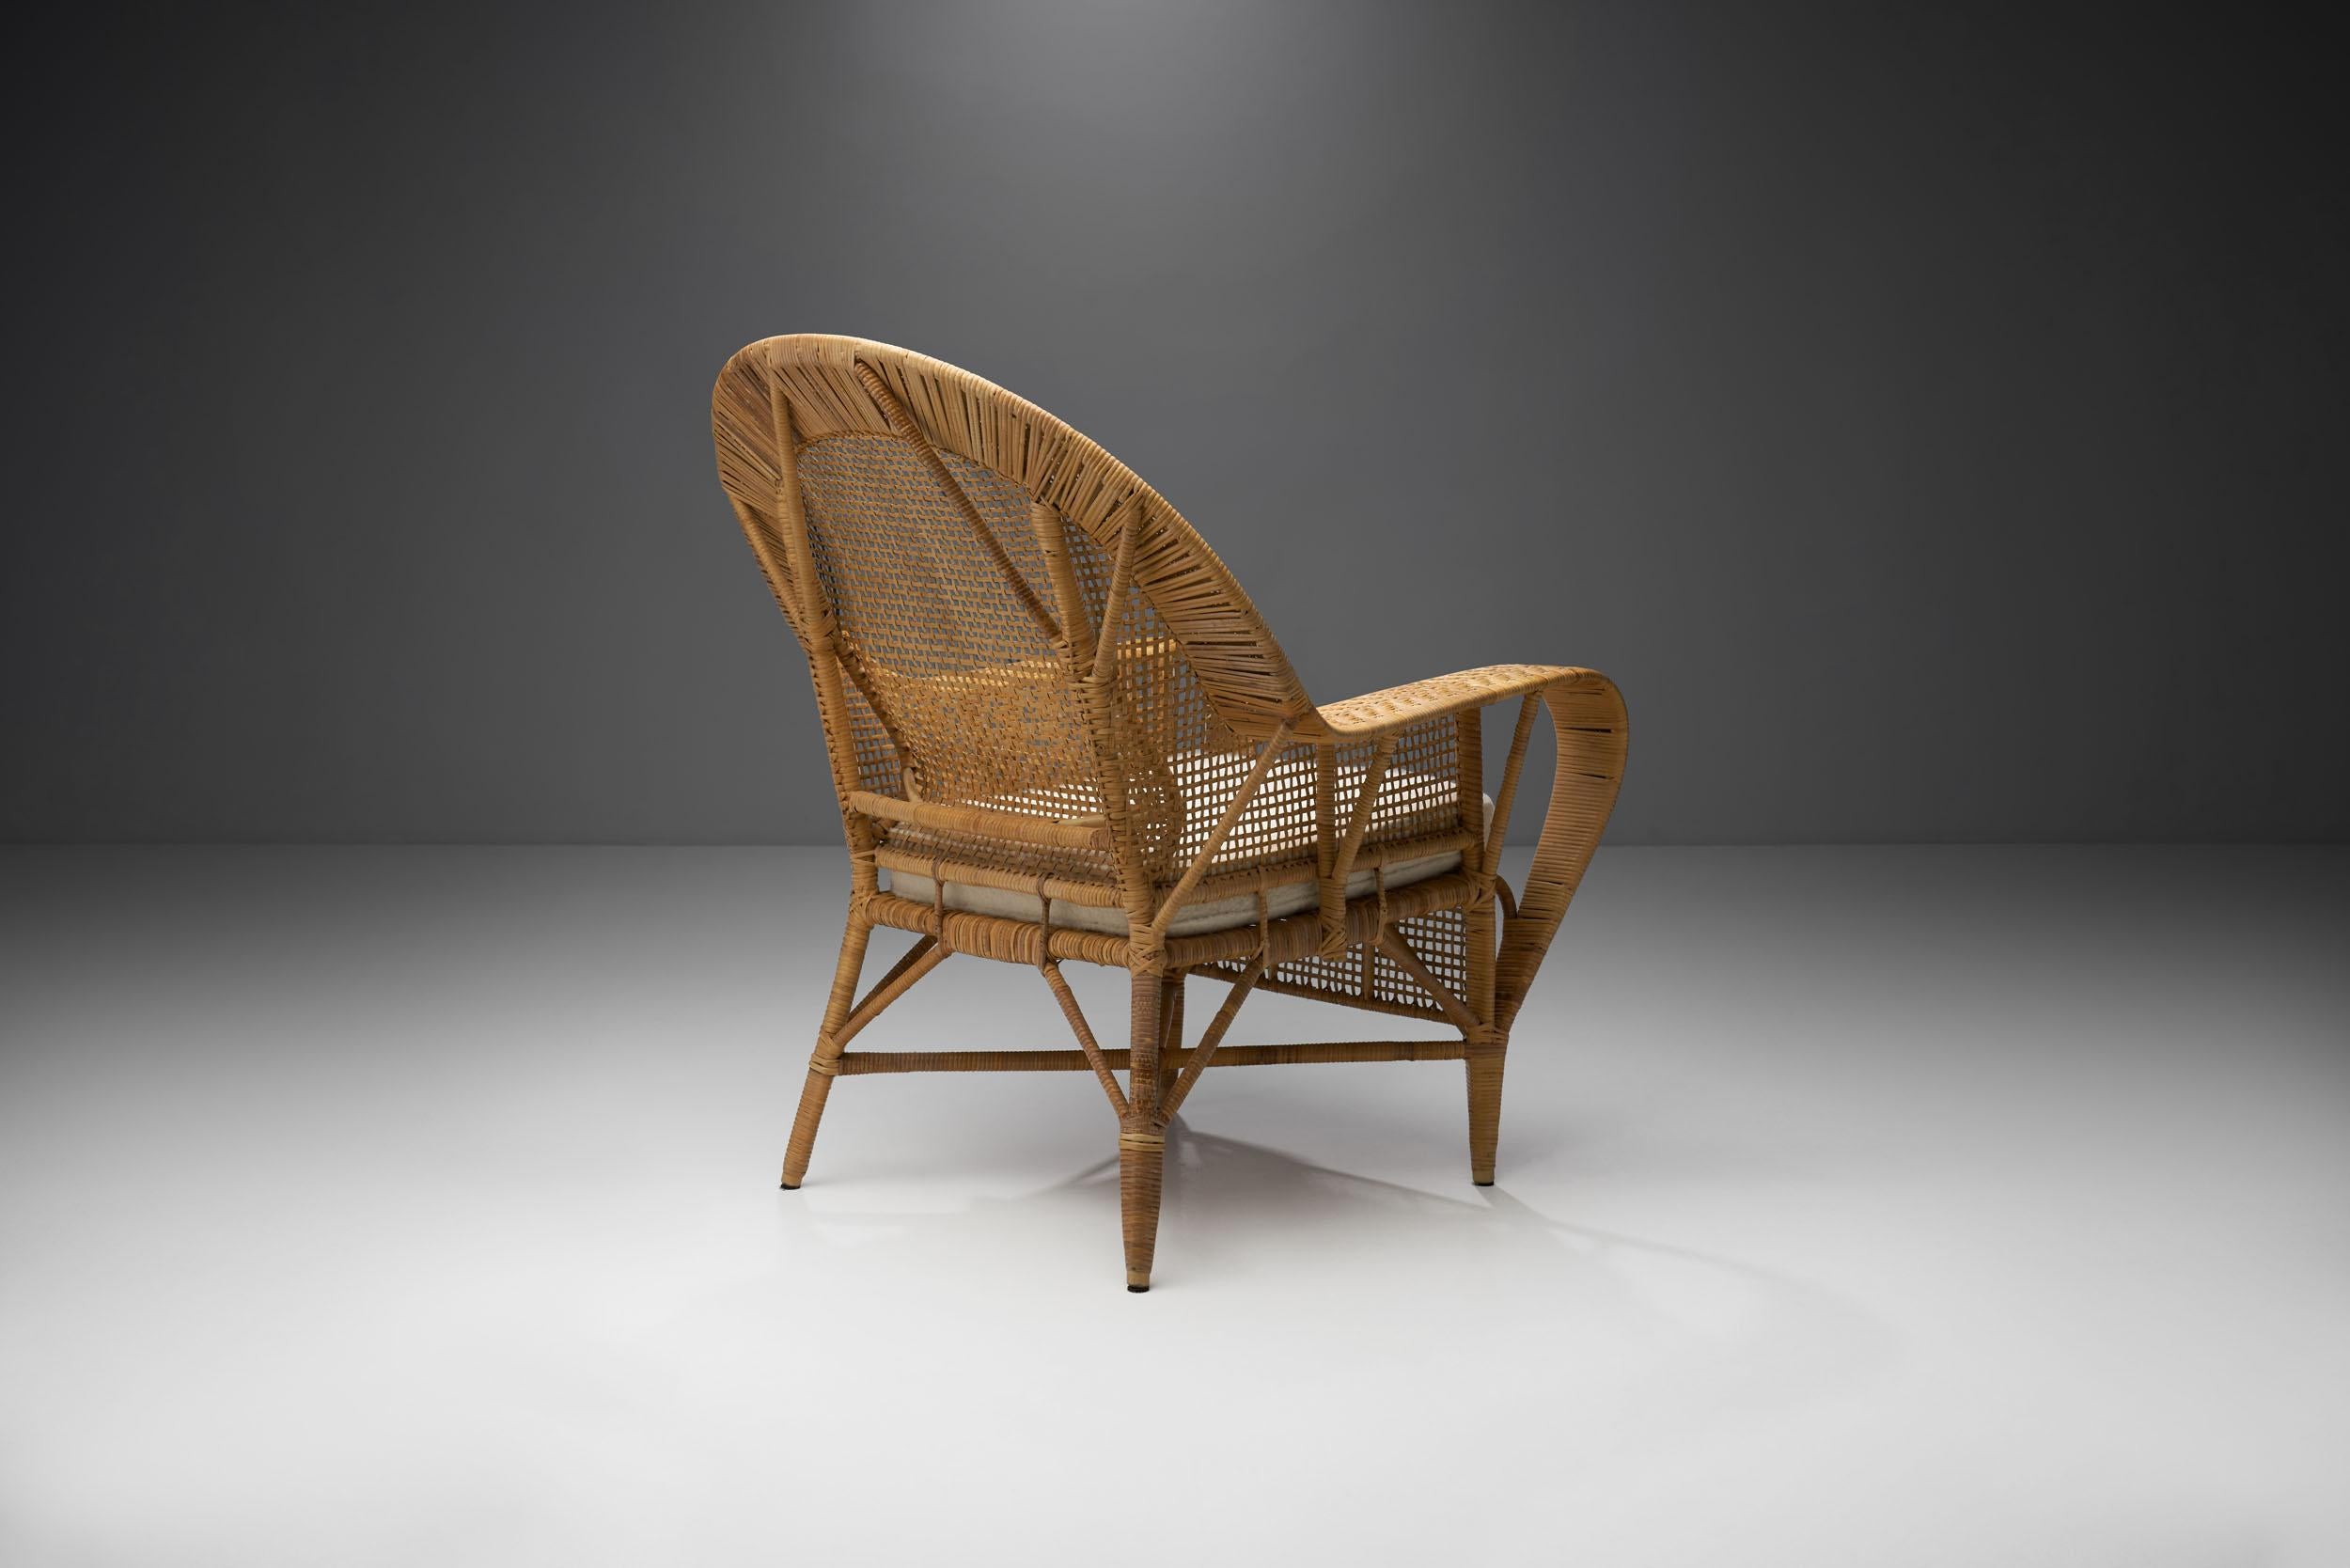 Danish Kay Fisker “Canton” Rattan Lounge Chair for Robert Wengler, Denmark, 1950s